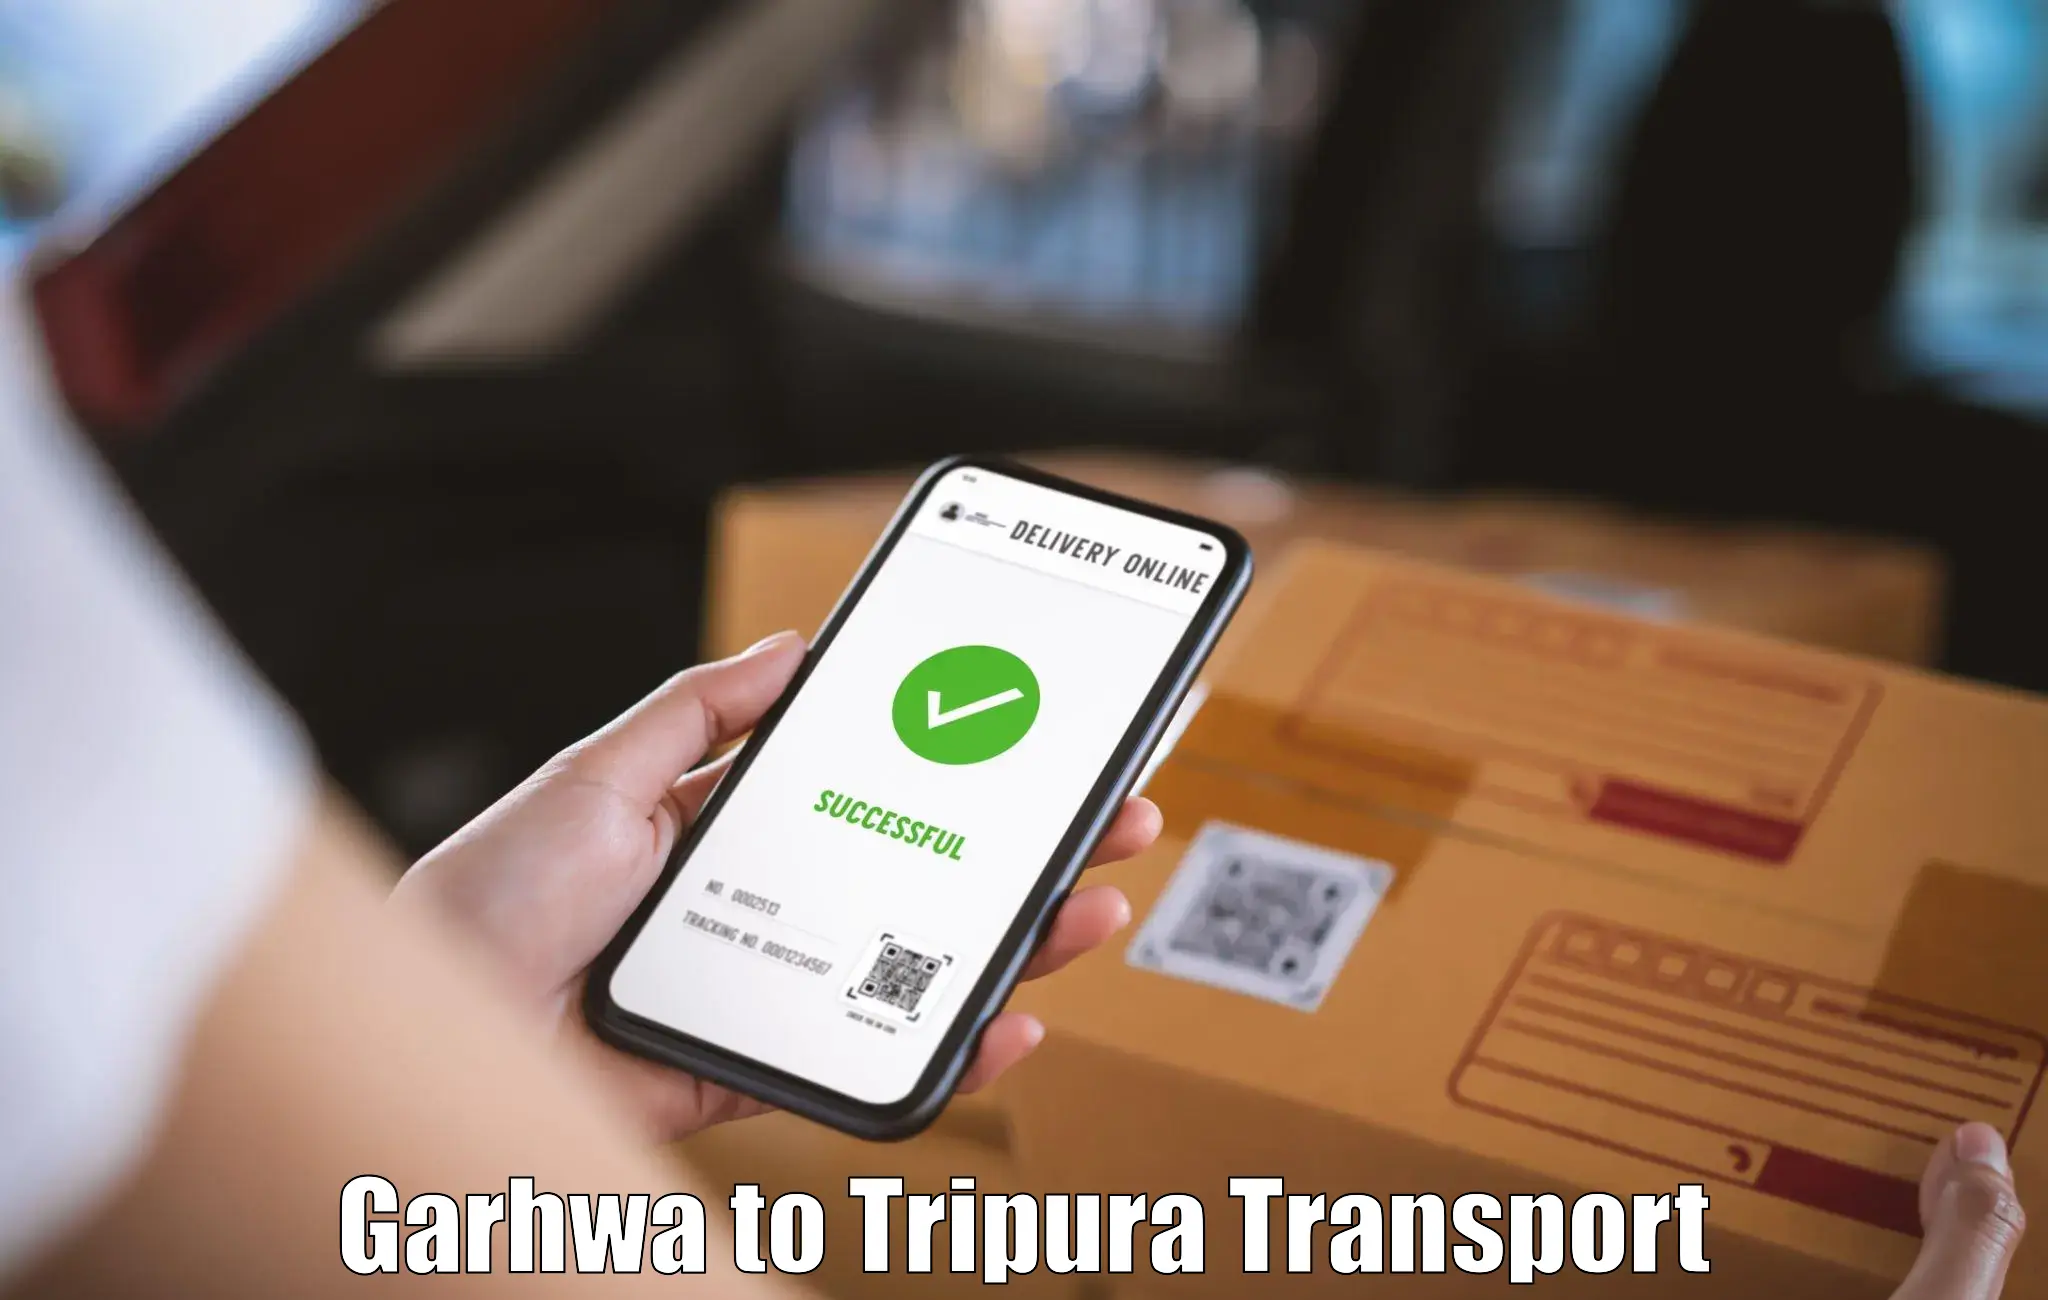 Furniture transport service Garhwa to Dharmanagar